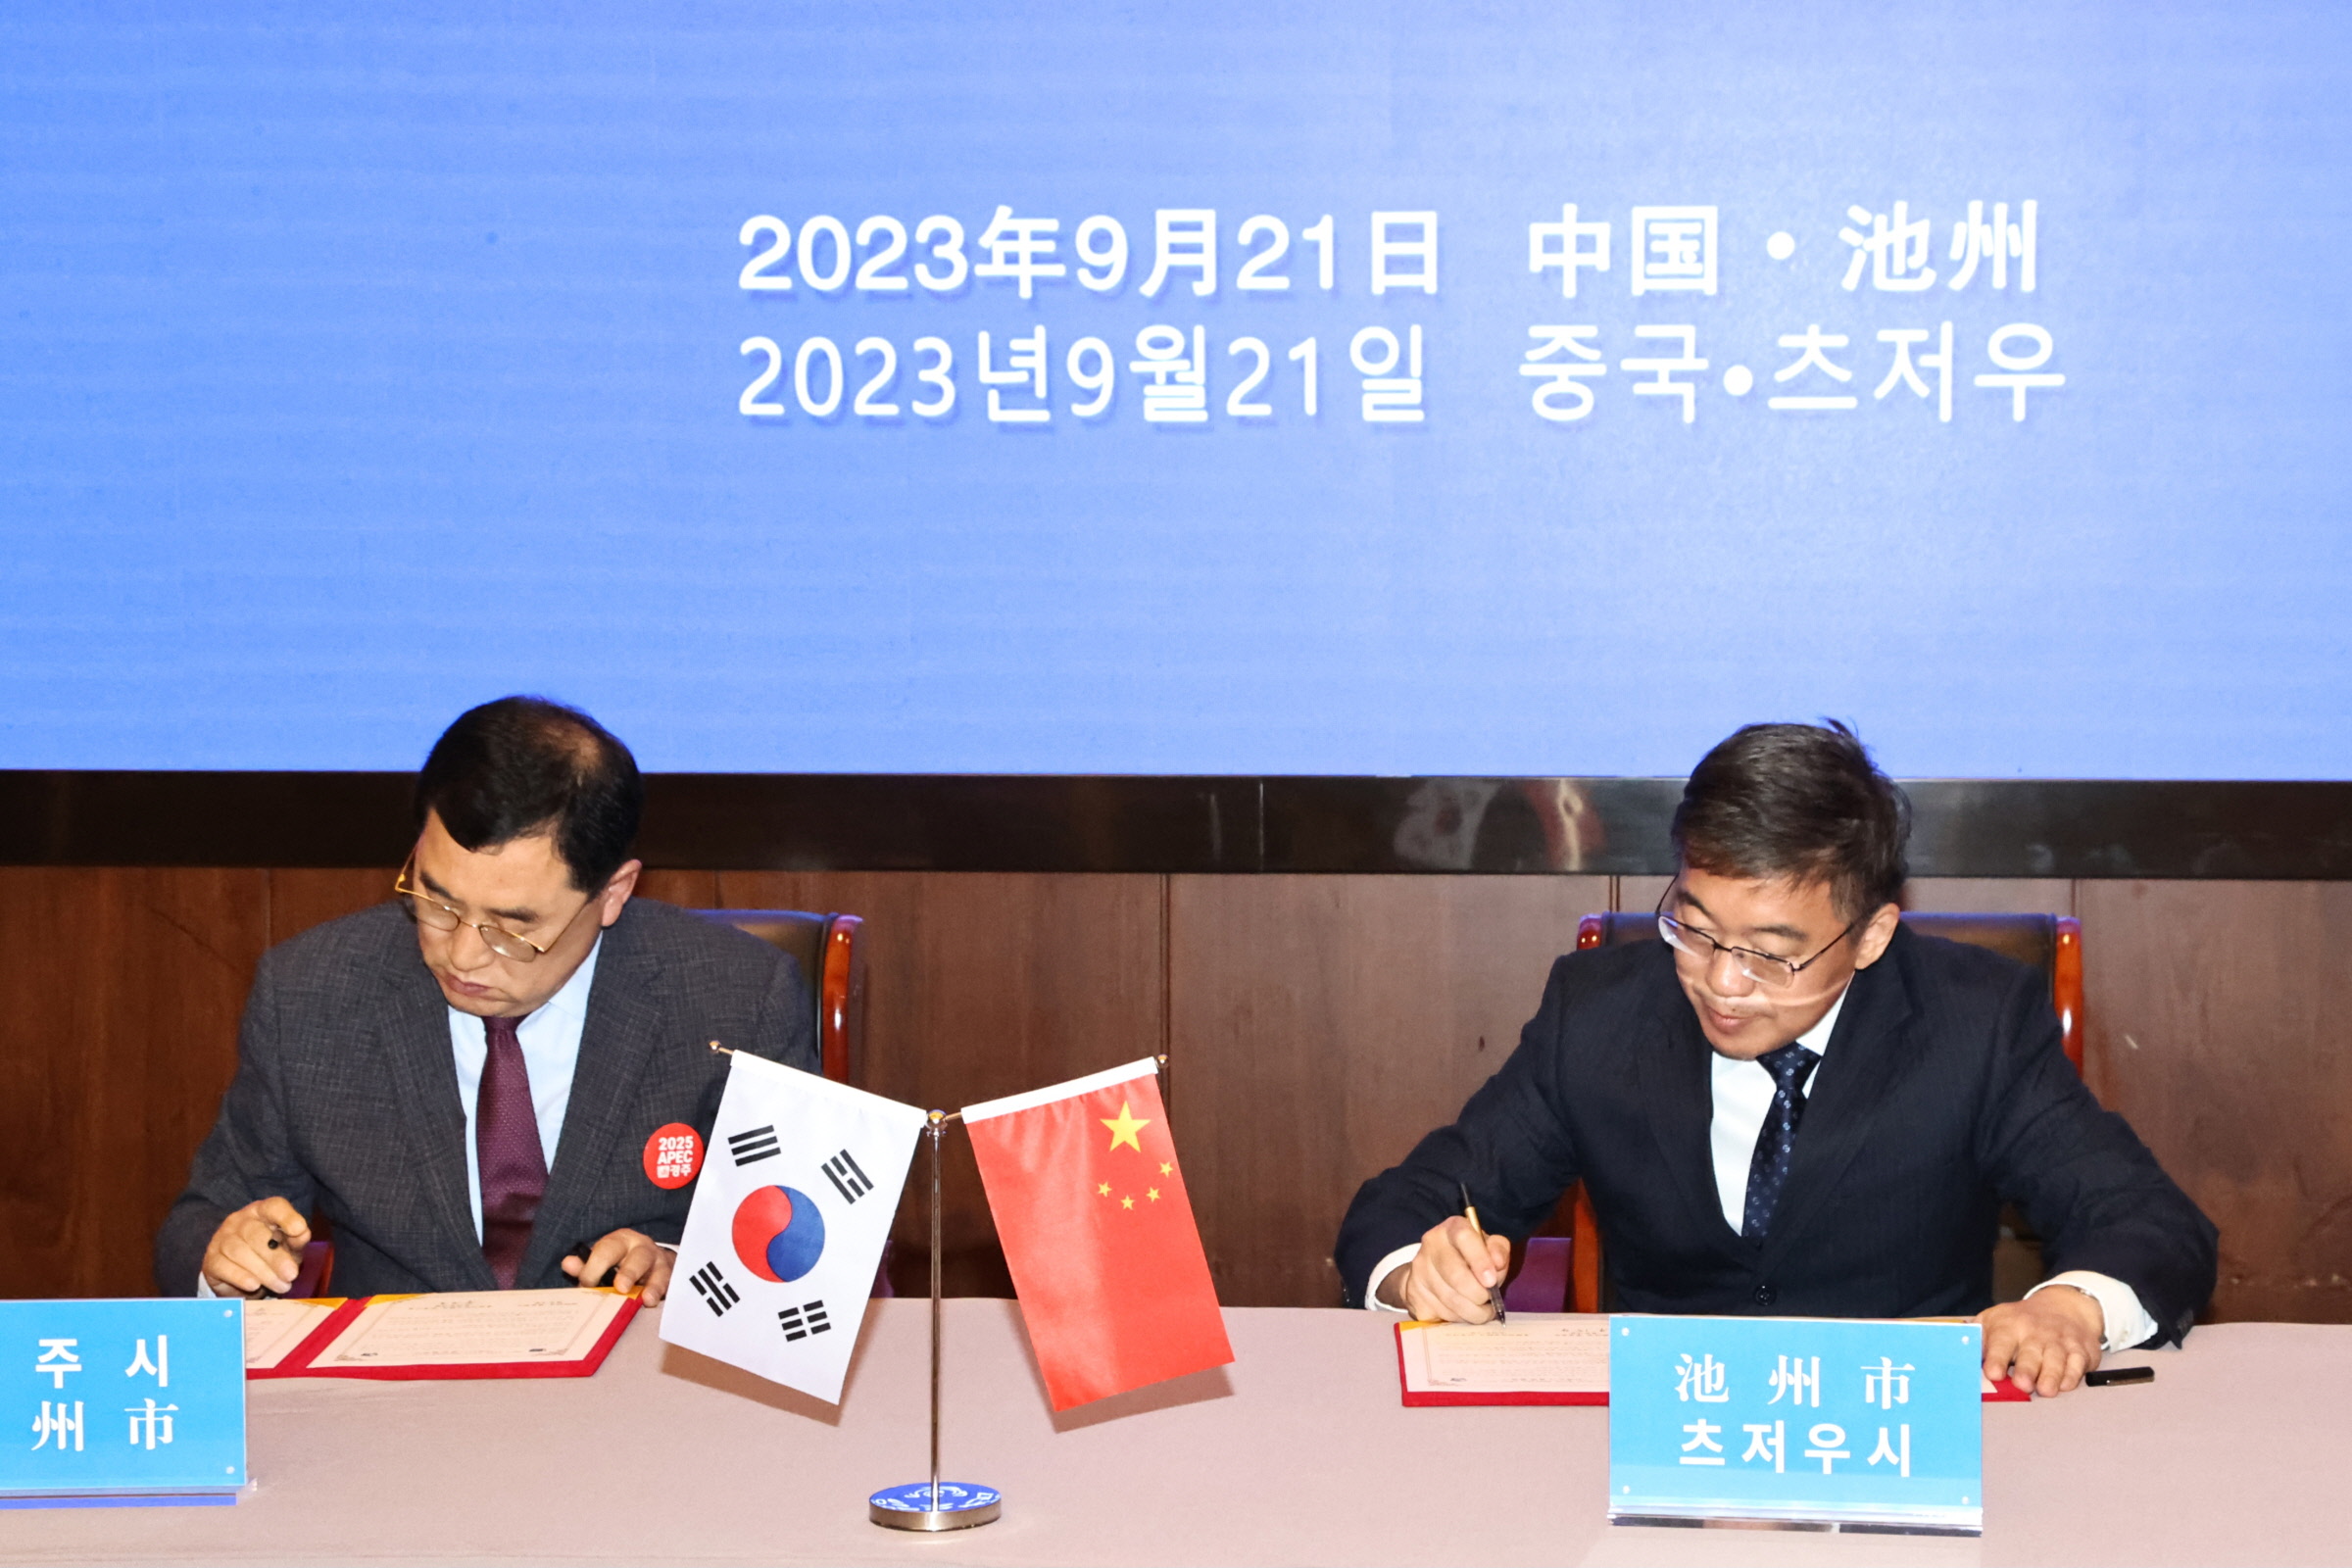 2023.9.21-중국 츠저우시와 자매도시 결연 협정 체결